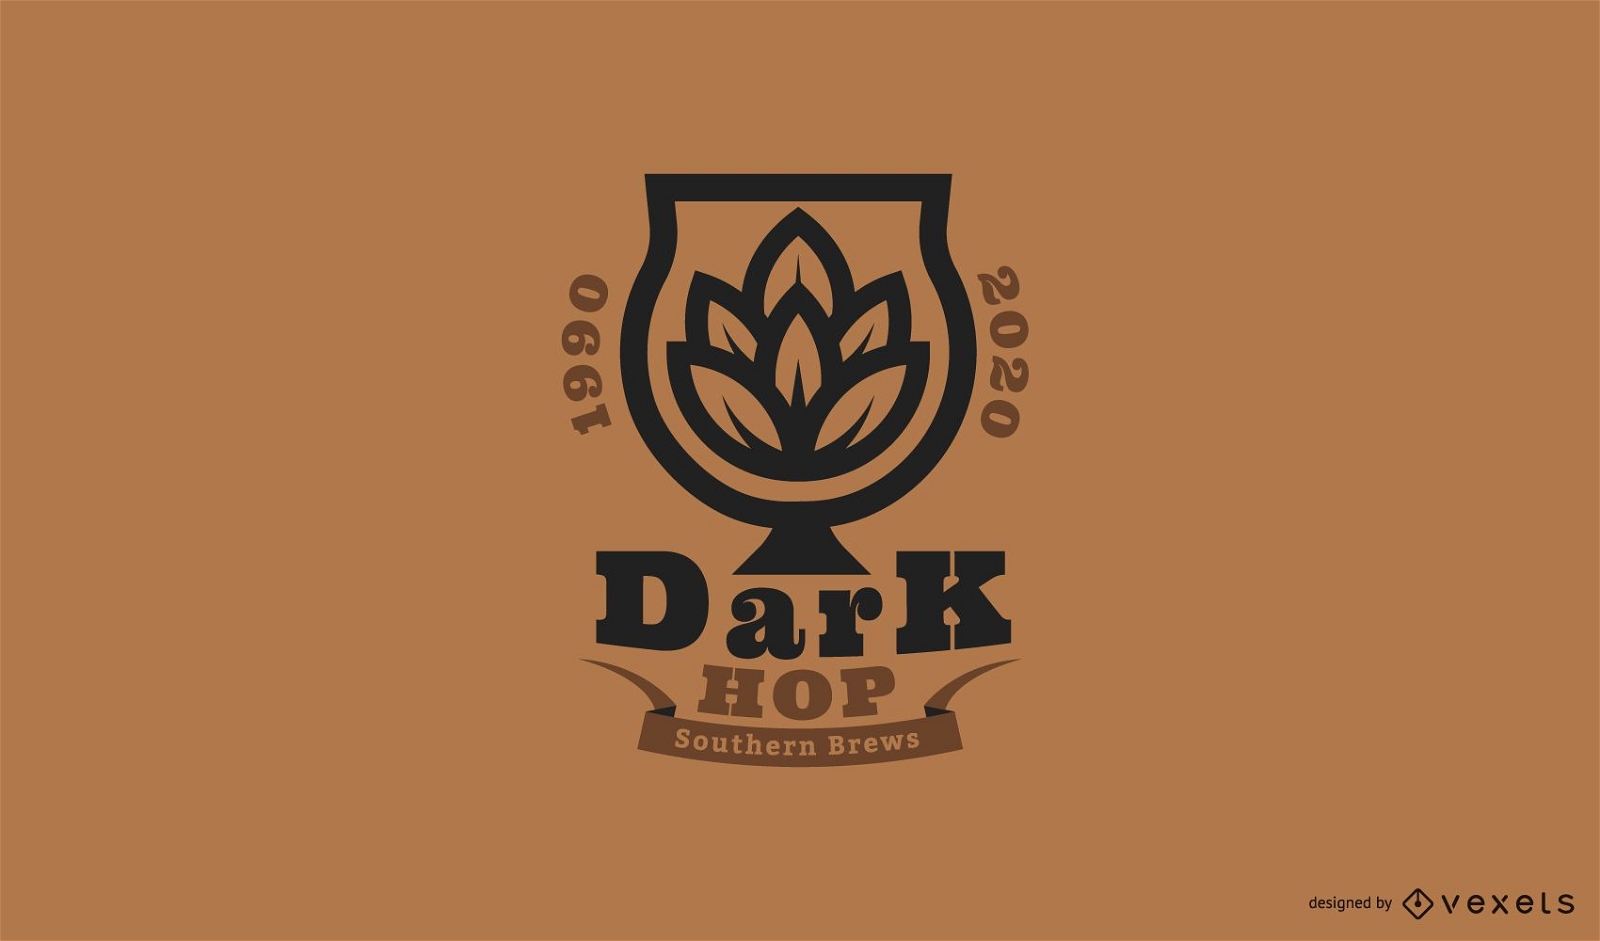 Plantilla de logotipo de cerveza dark hop